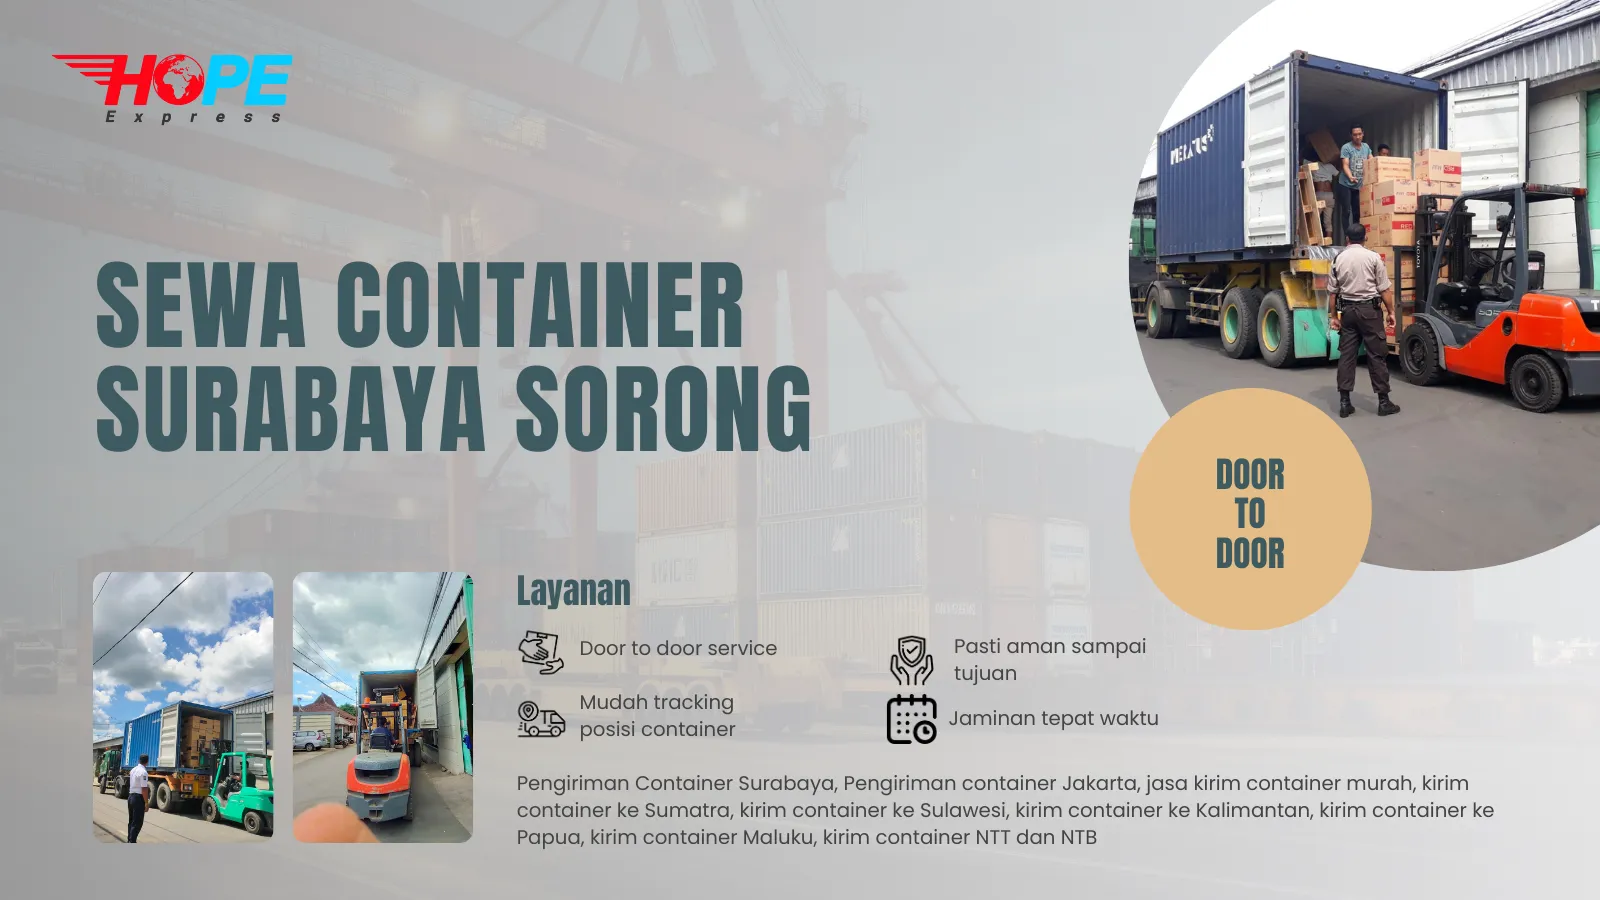 Sewa Container Surabaya Sorong